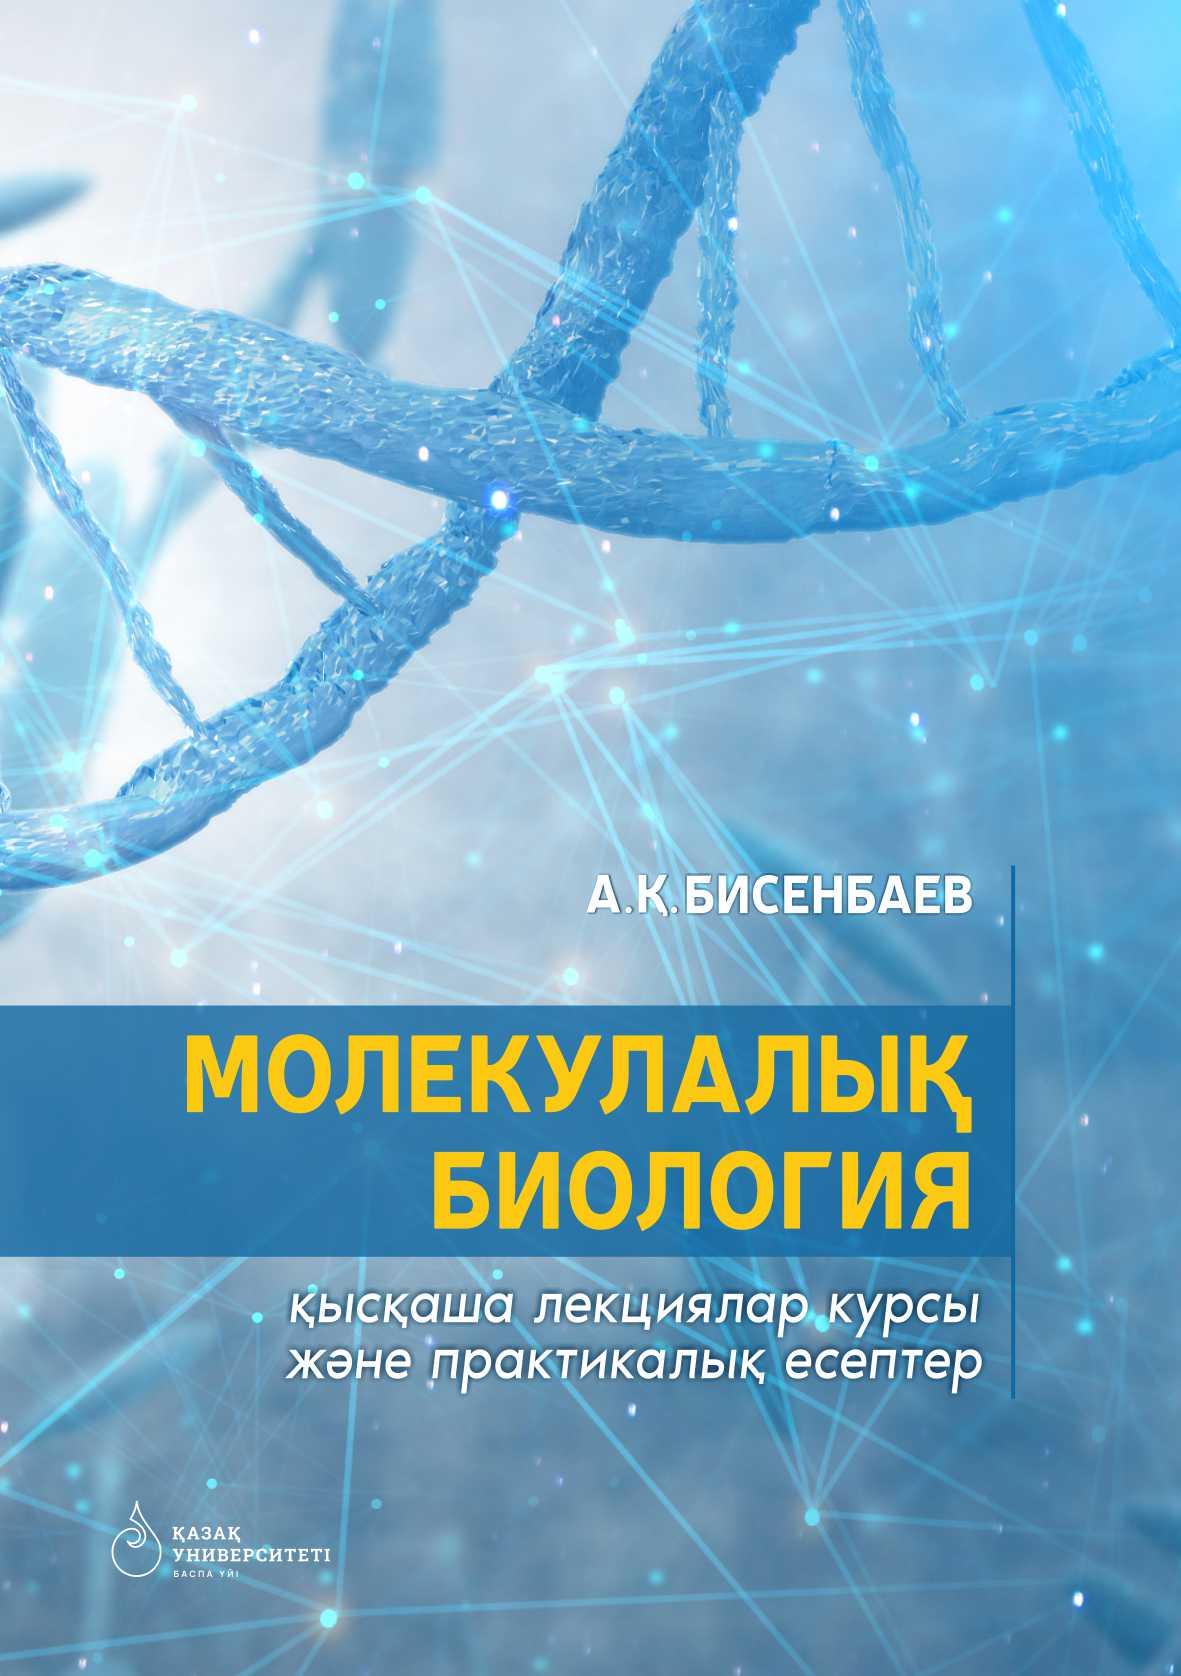 Молекулалық биология: қысқаша лекциялар курсы және прак-тикалық есептер– 255 б.